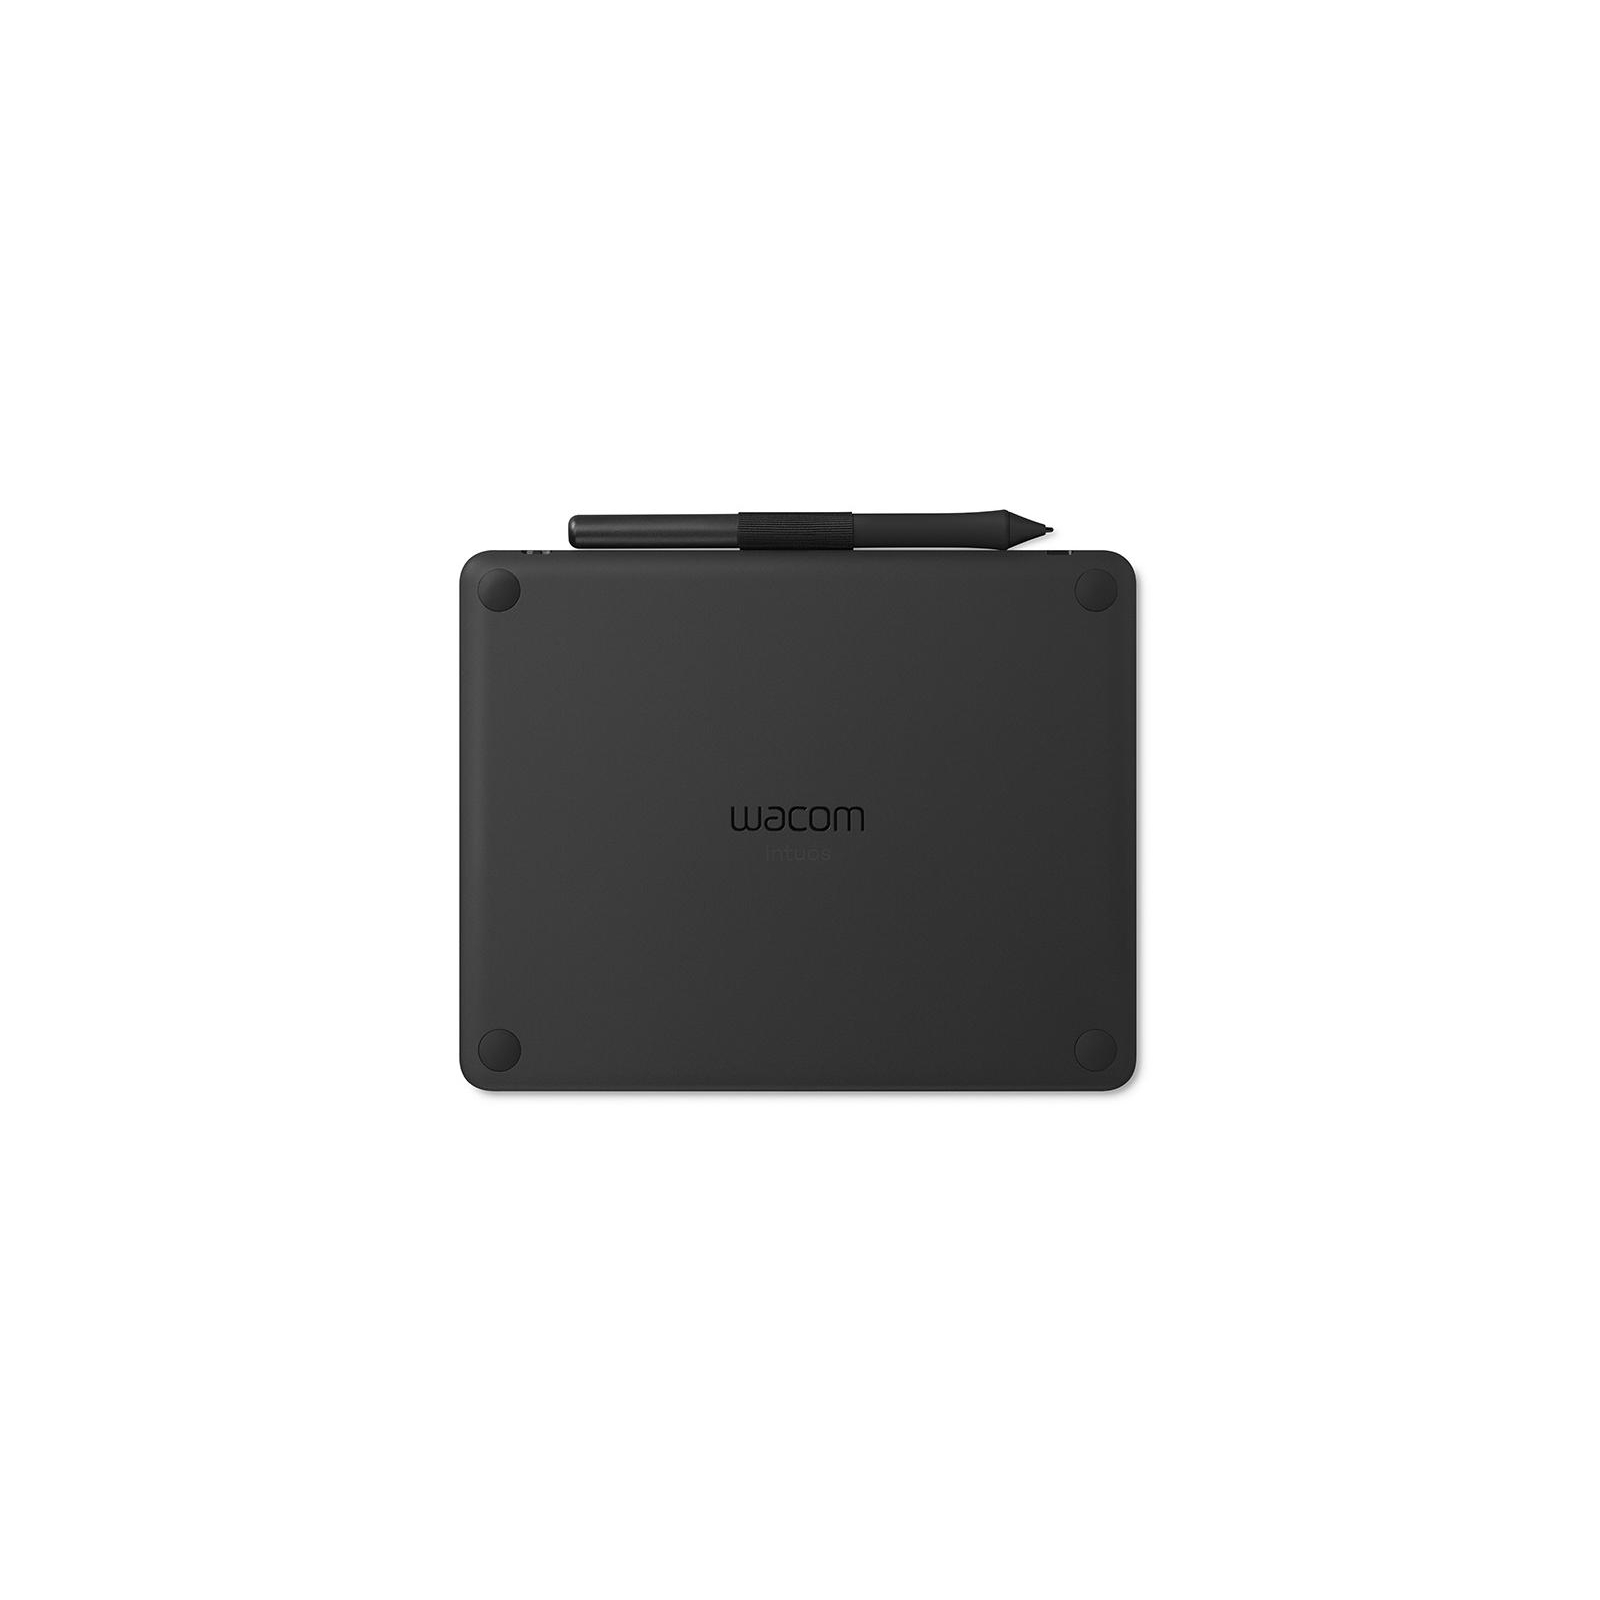 Графический планшет Wacom Intuos S Bluetooth black (CTL-4100WLK-N) изображение 3